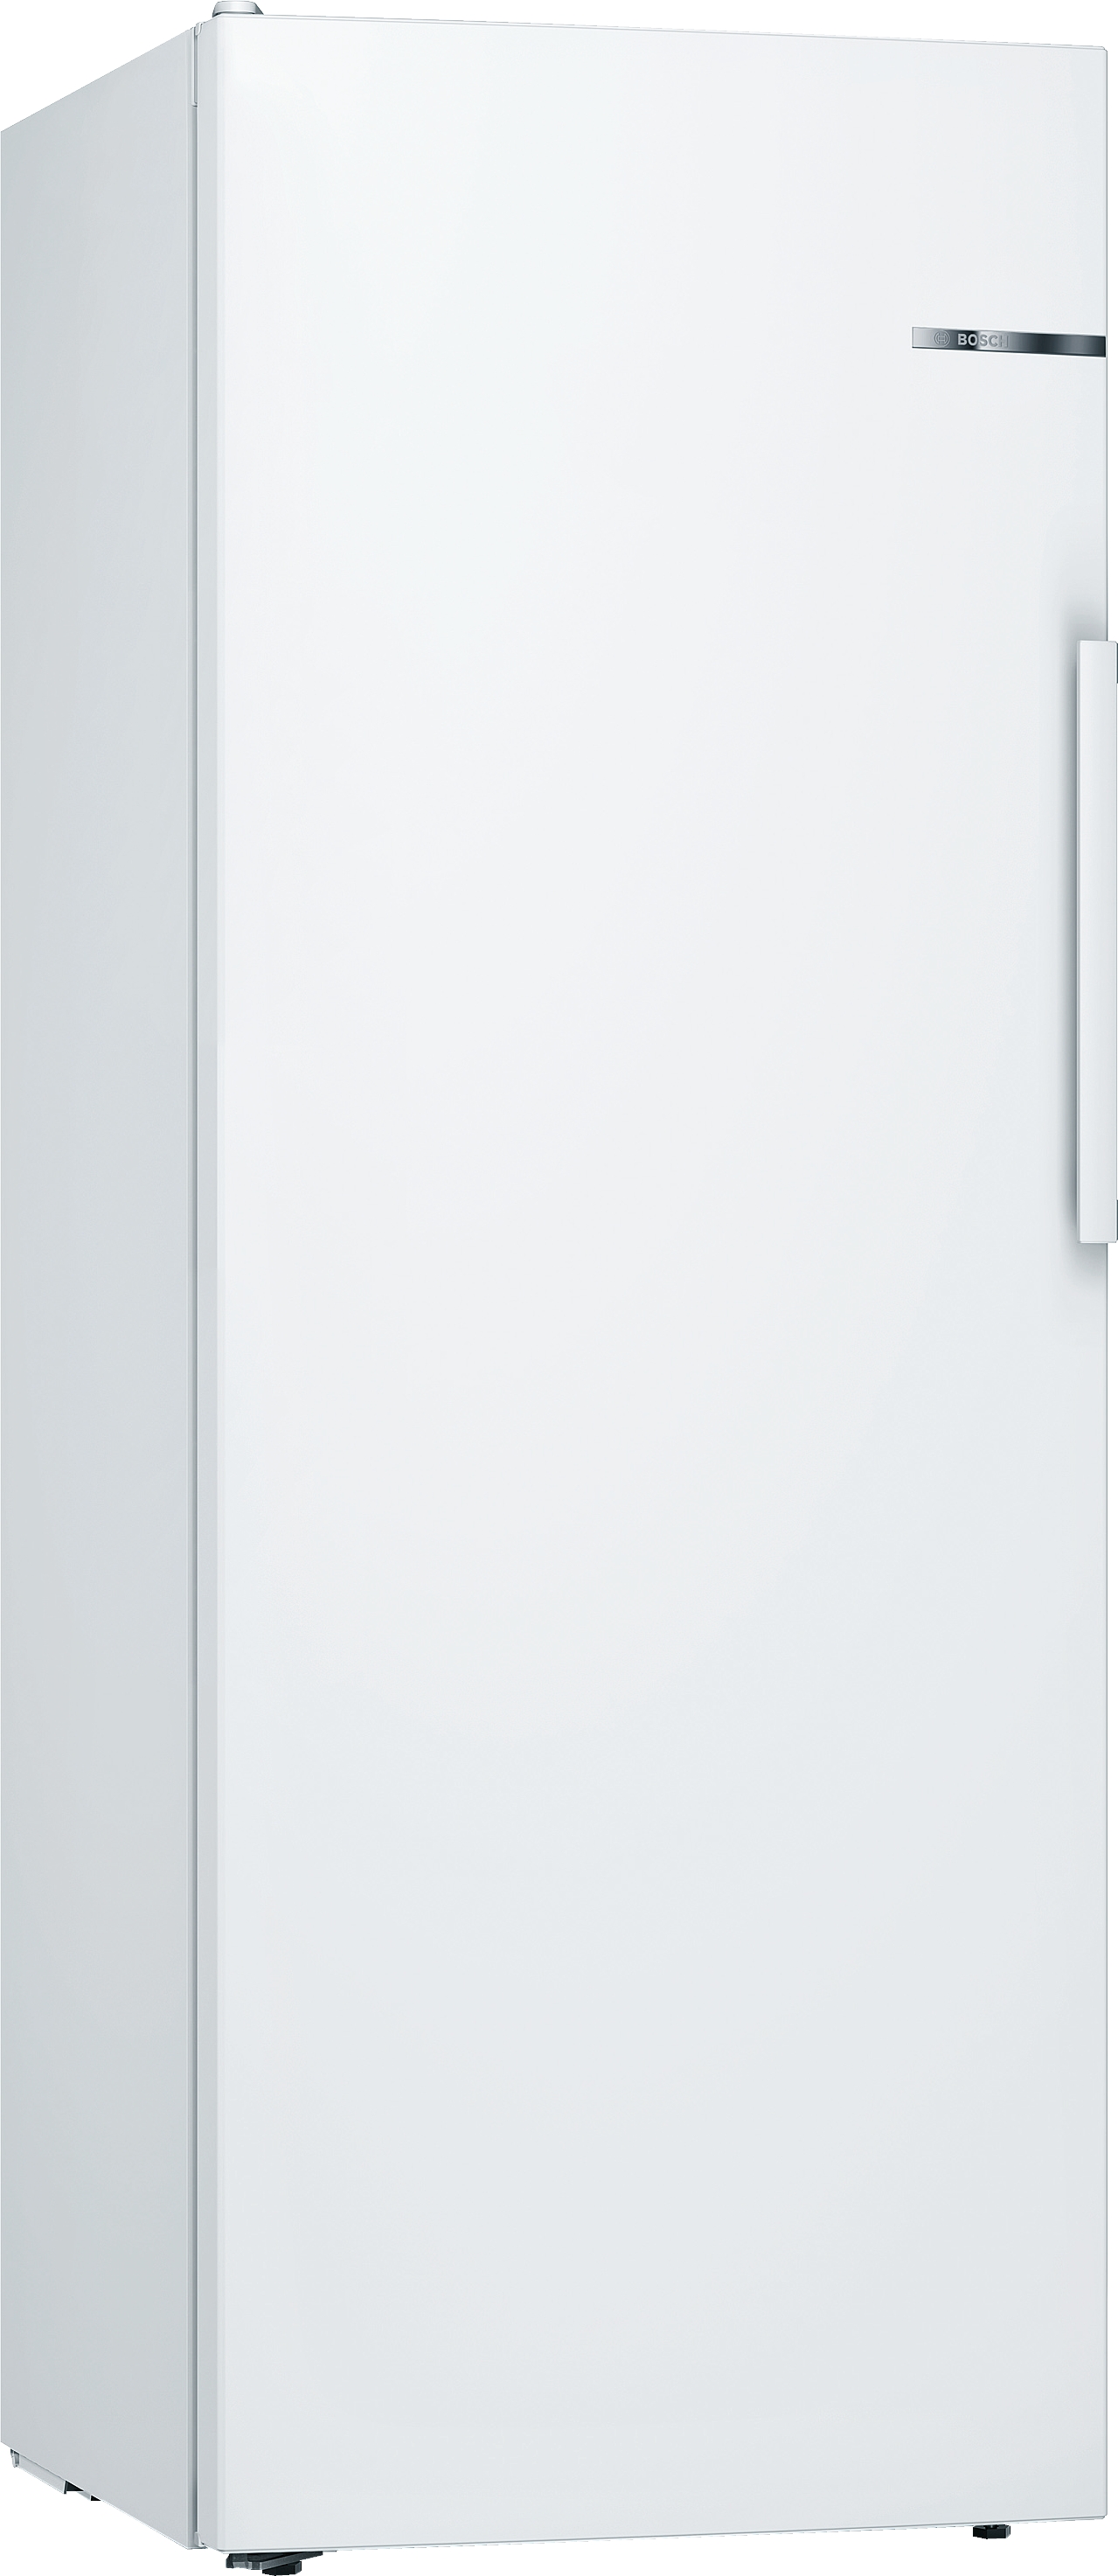 KSV29NWEP, Samostojeći frižider